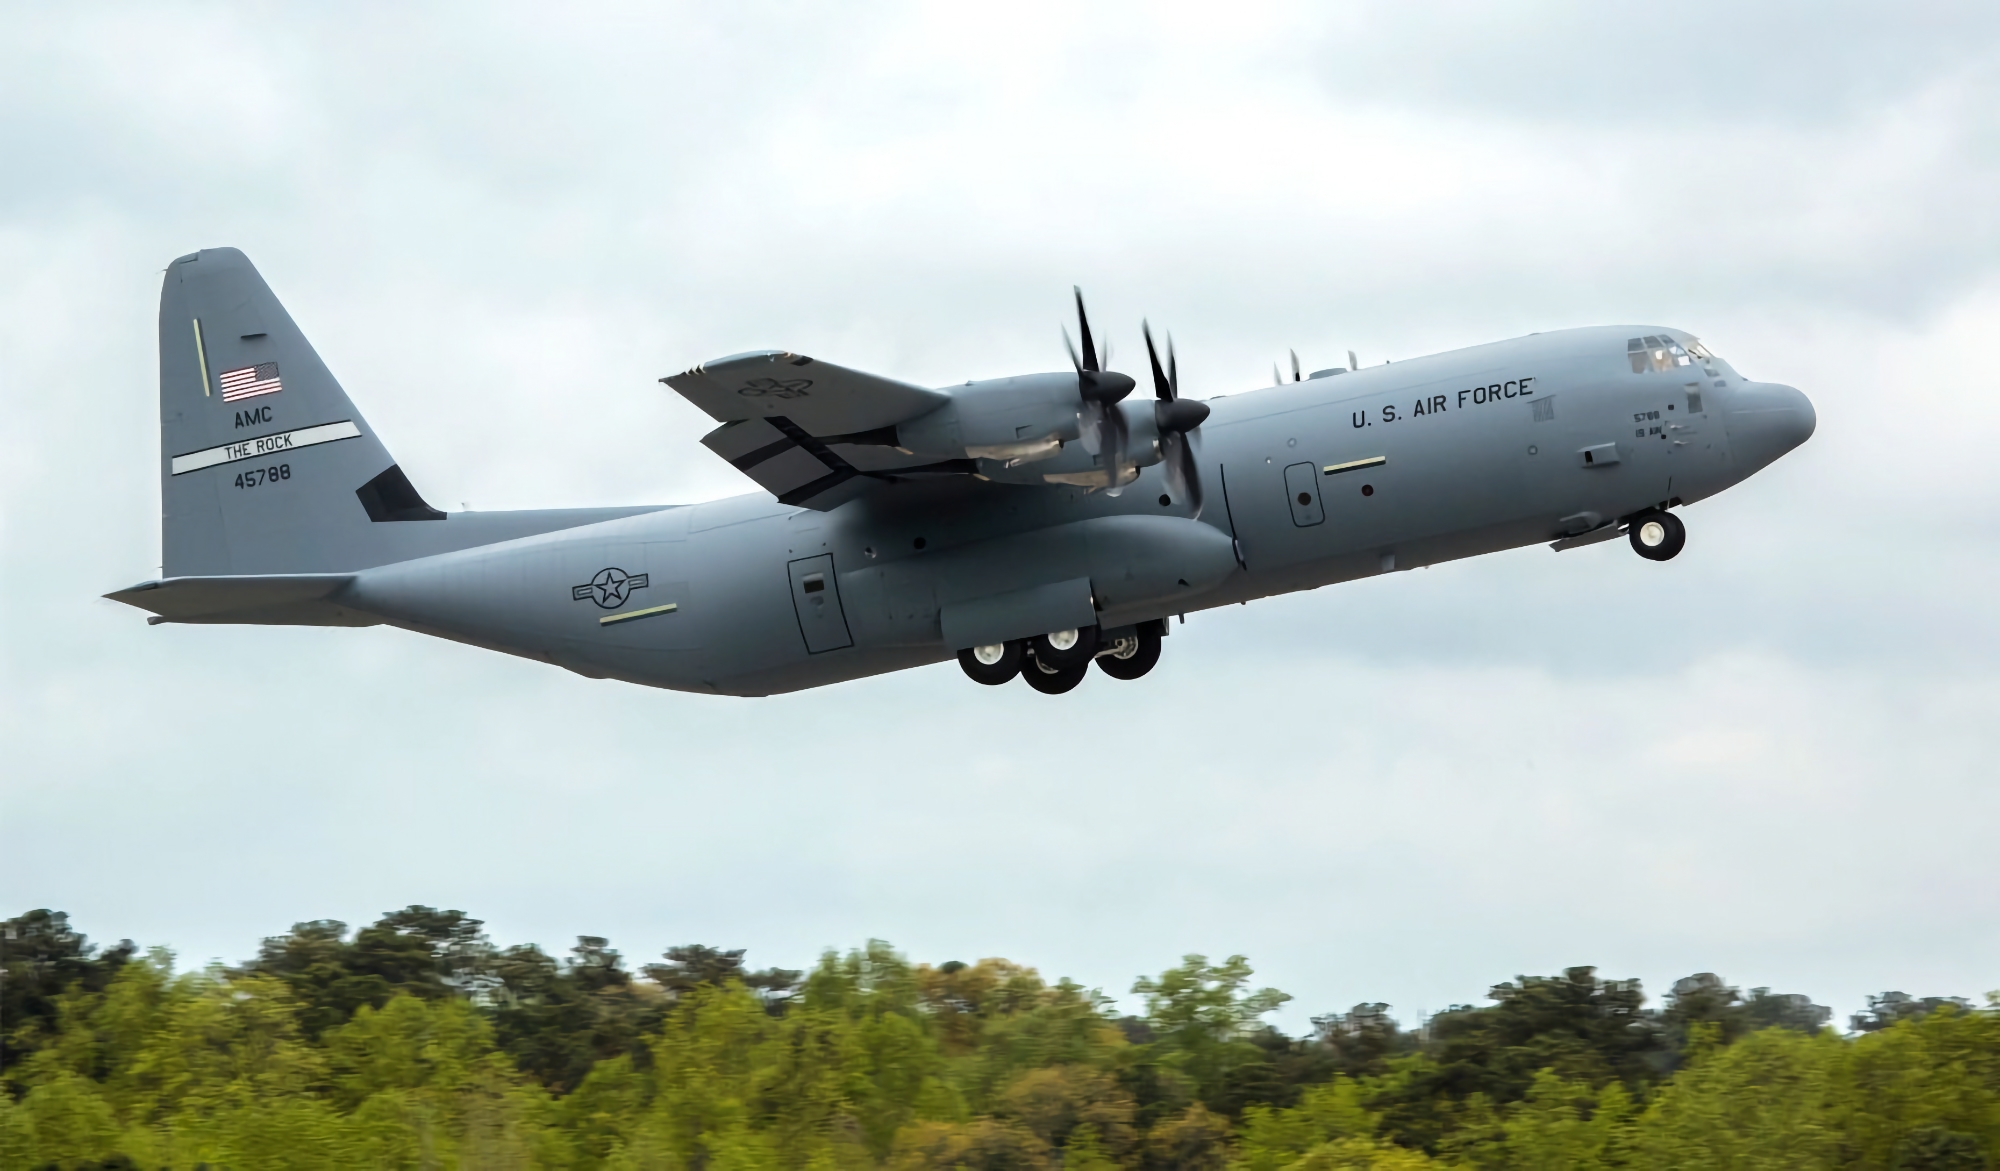 Kontrakt på 390 mio. dollars: Filippinerne køber C-130 Super Hercules militære transportfly fra Lockheed Martin